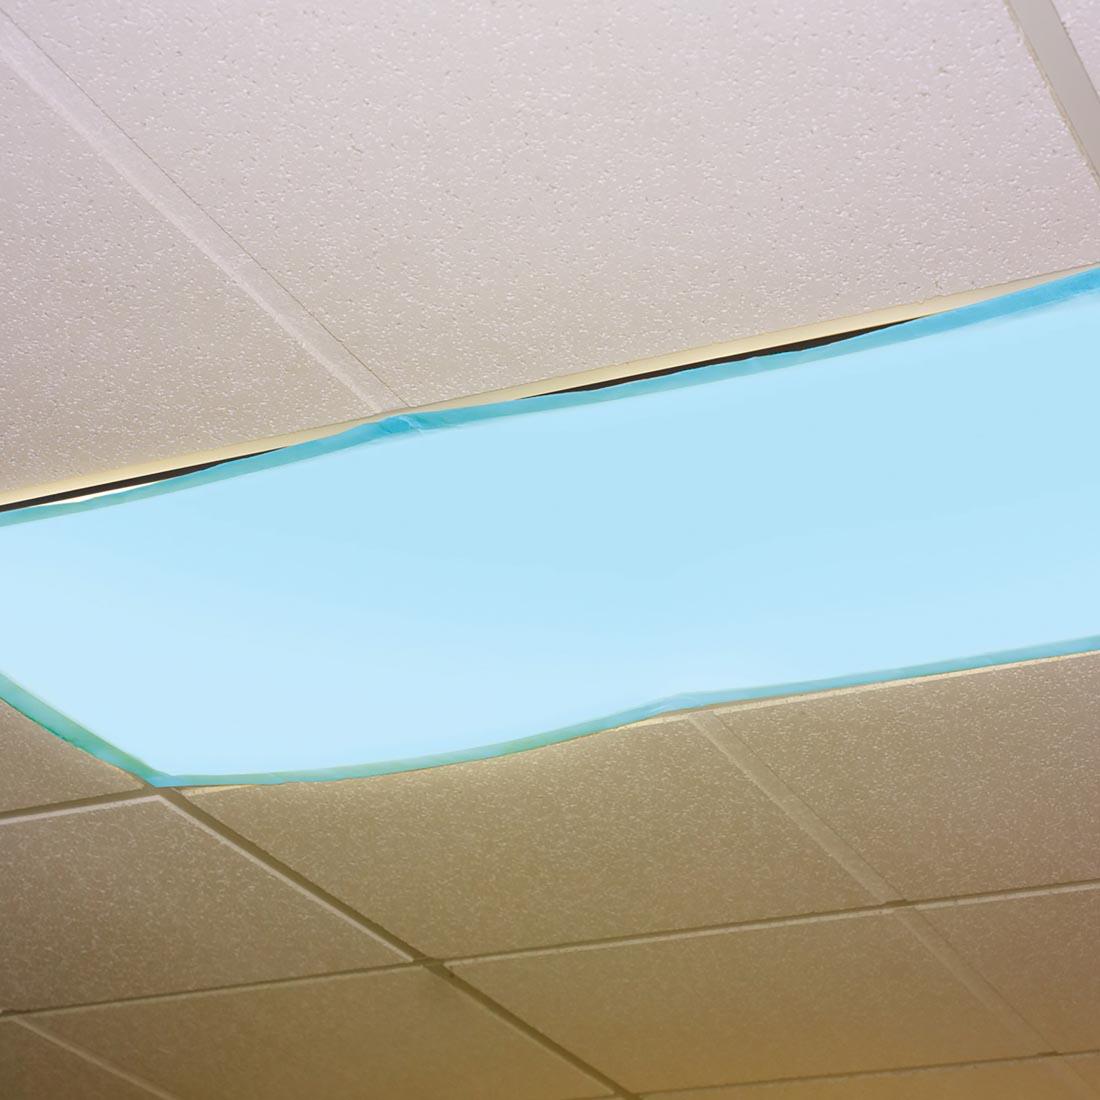 light blue filter over an overhead fluorescent light